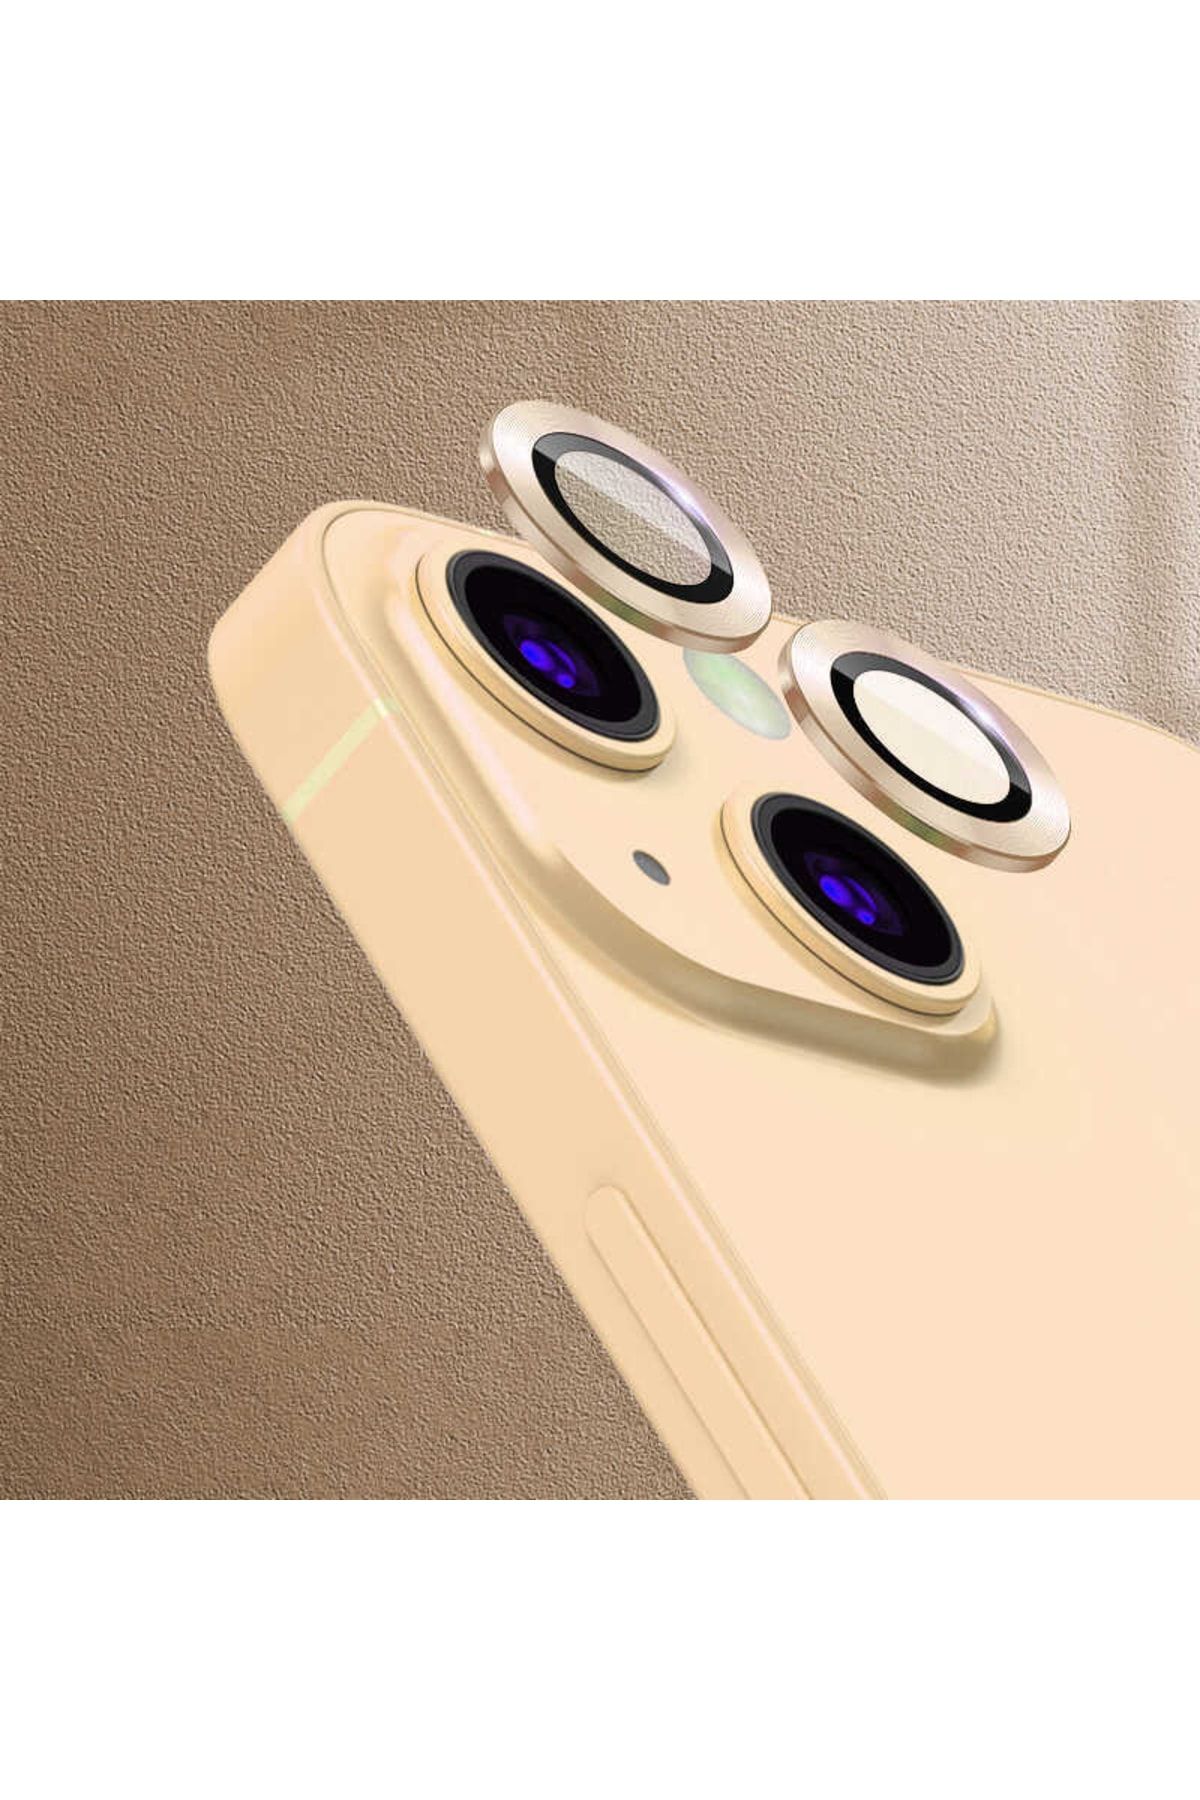 UnDePlus Uyumlu Iphone 13 Mini Kamera Lens Koruyucu Çerçeveli Koruyucu Cl-07